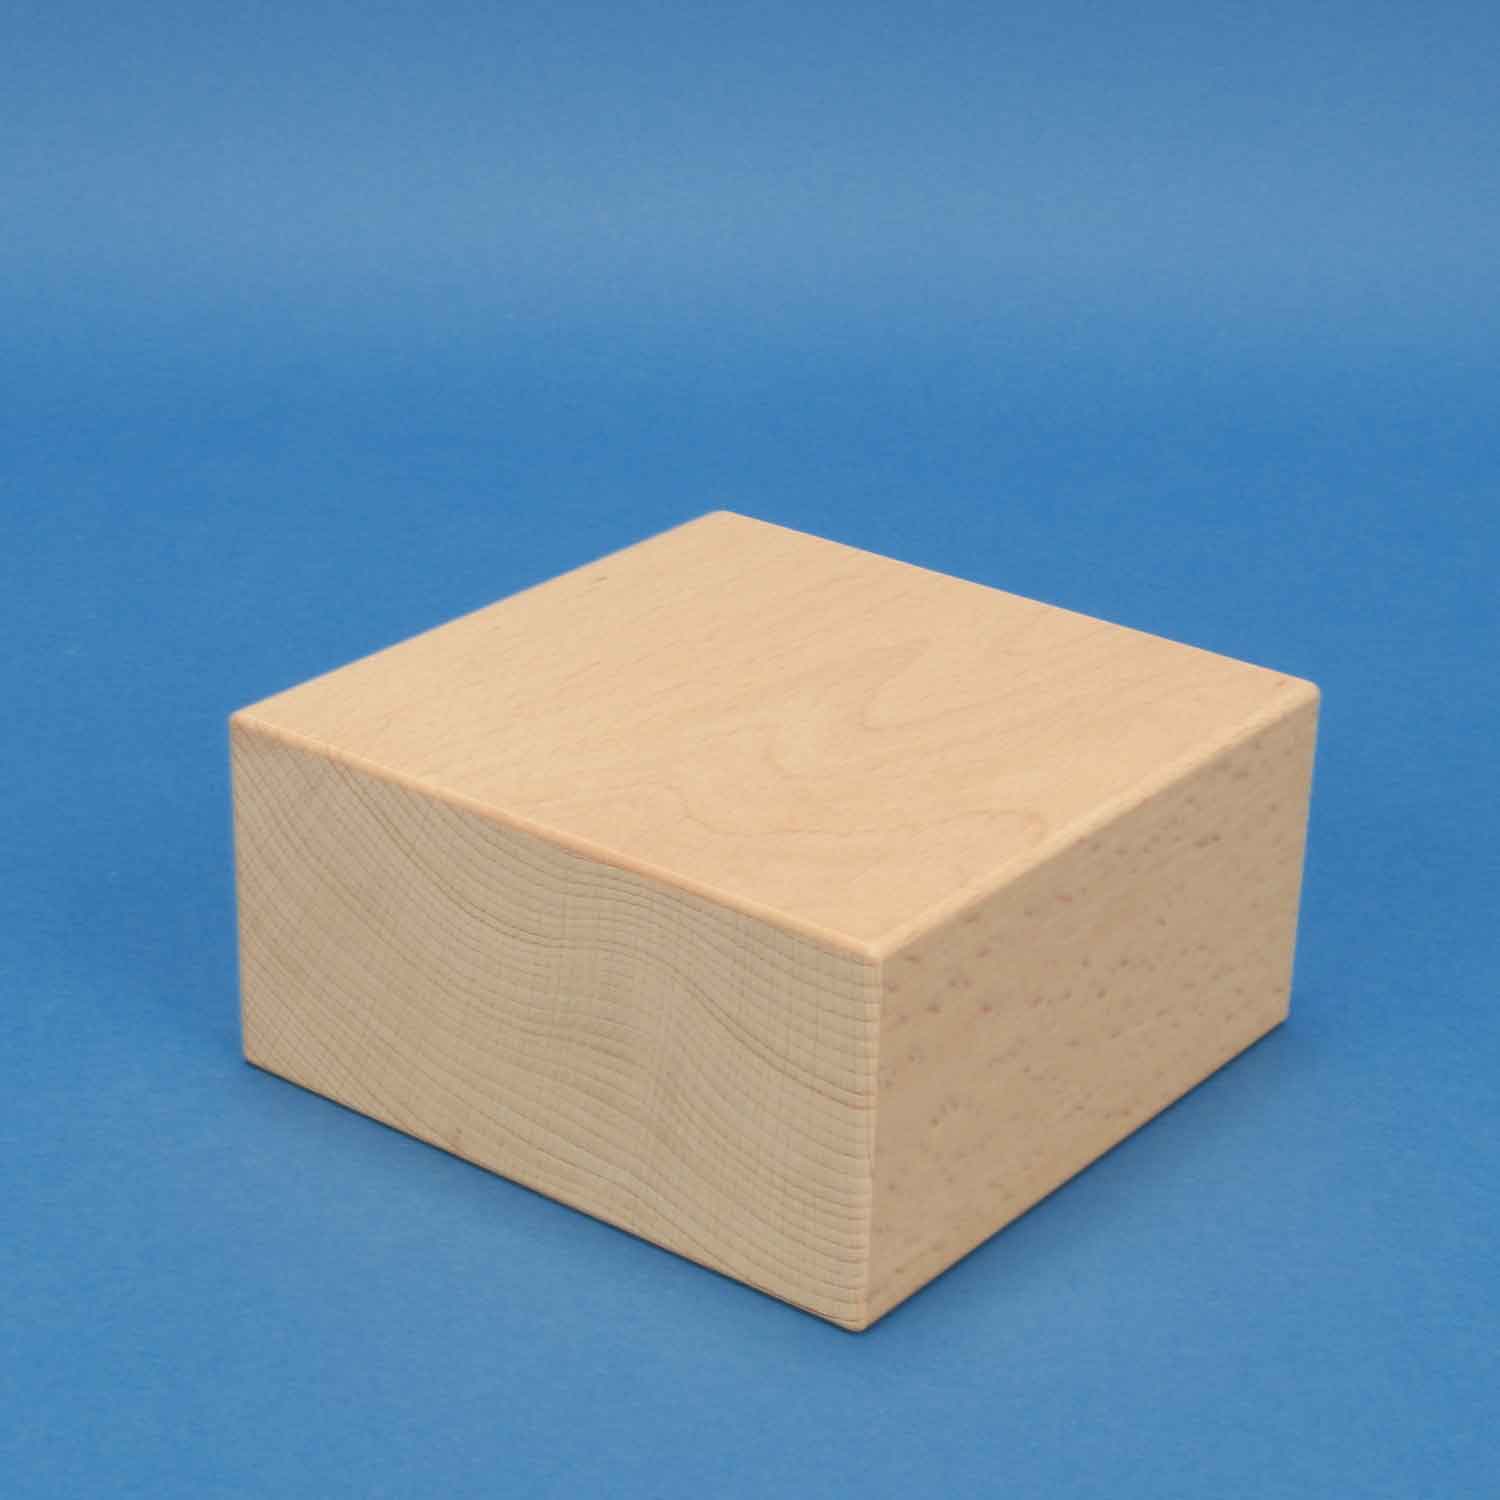 extra grote houten blokken 12 x 12 x 6 cm | grote houten blokken 12 x 6 cm houten vierkante blokken | houten blokken per stuk | Houten blokken | tischlerschuppen.de